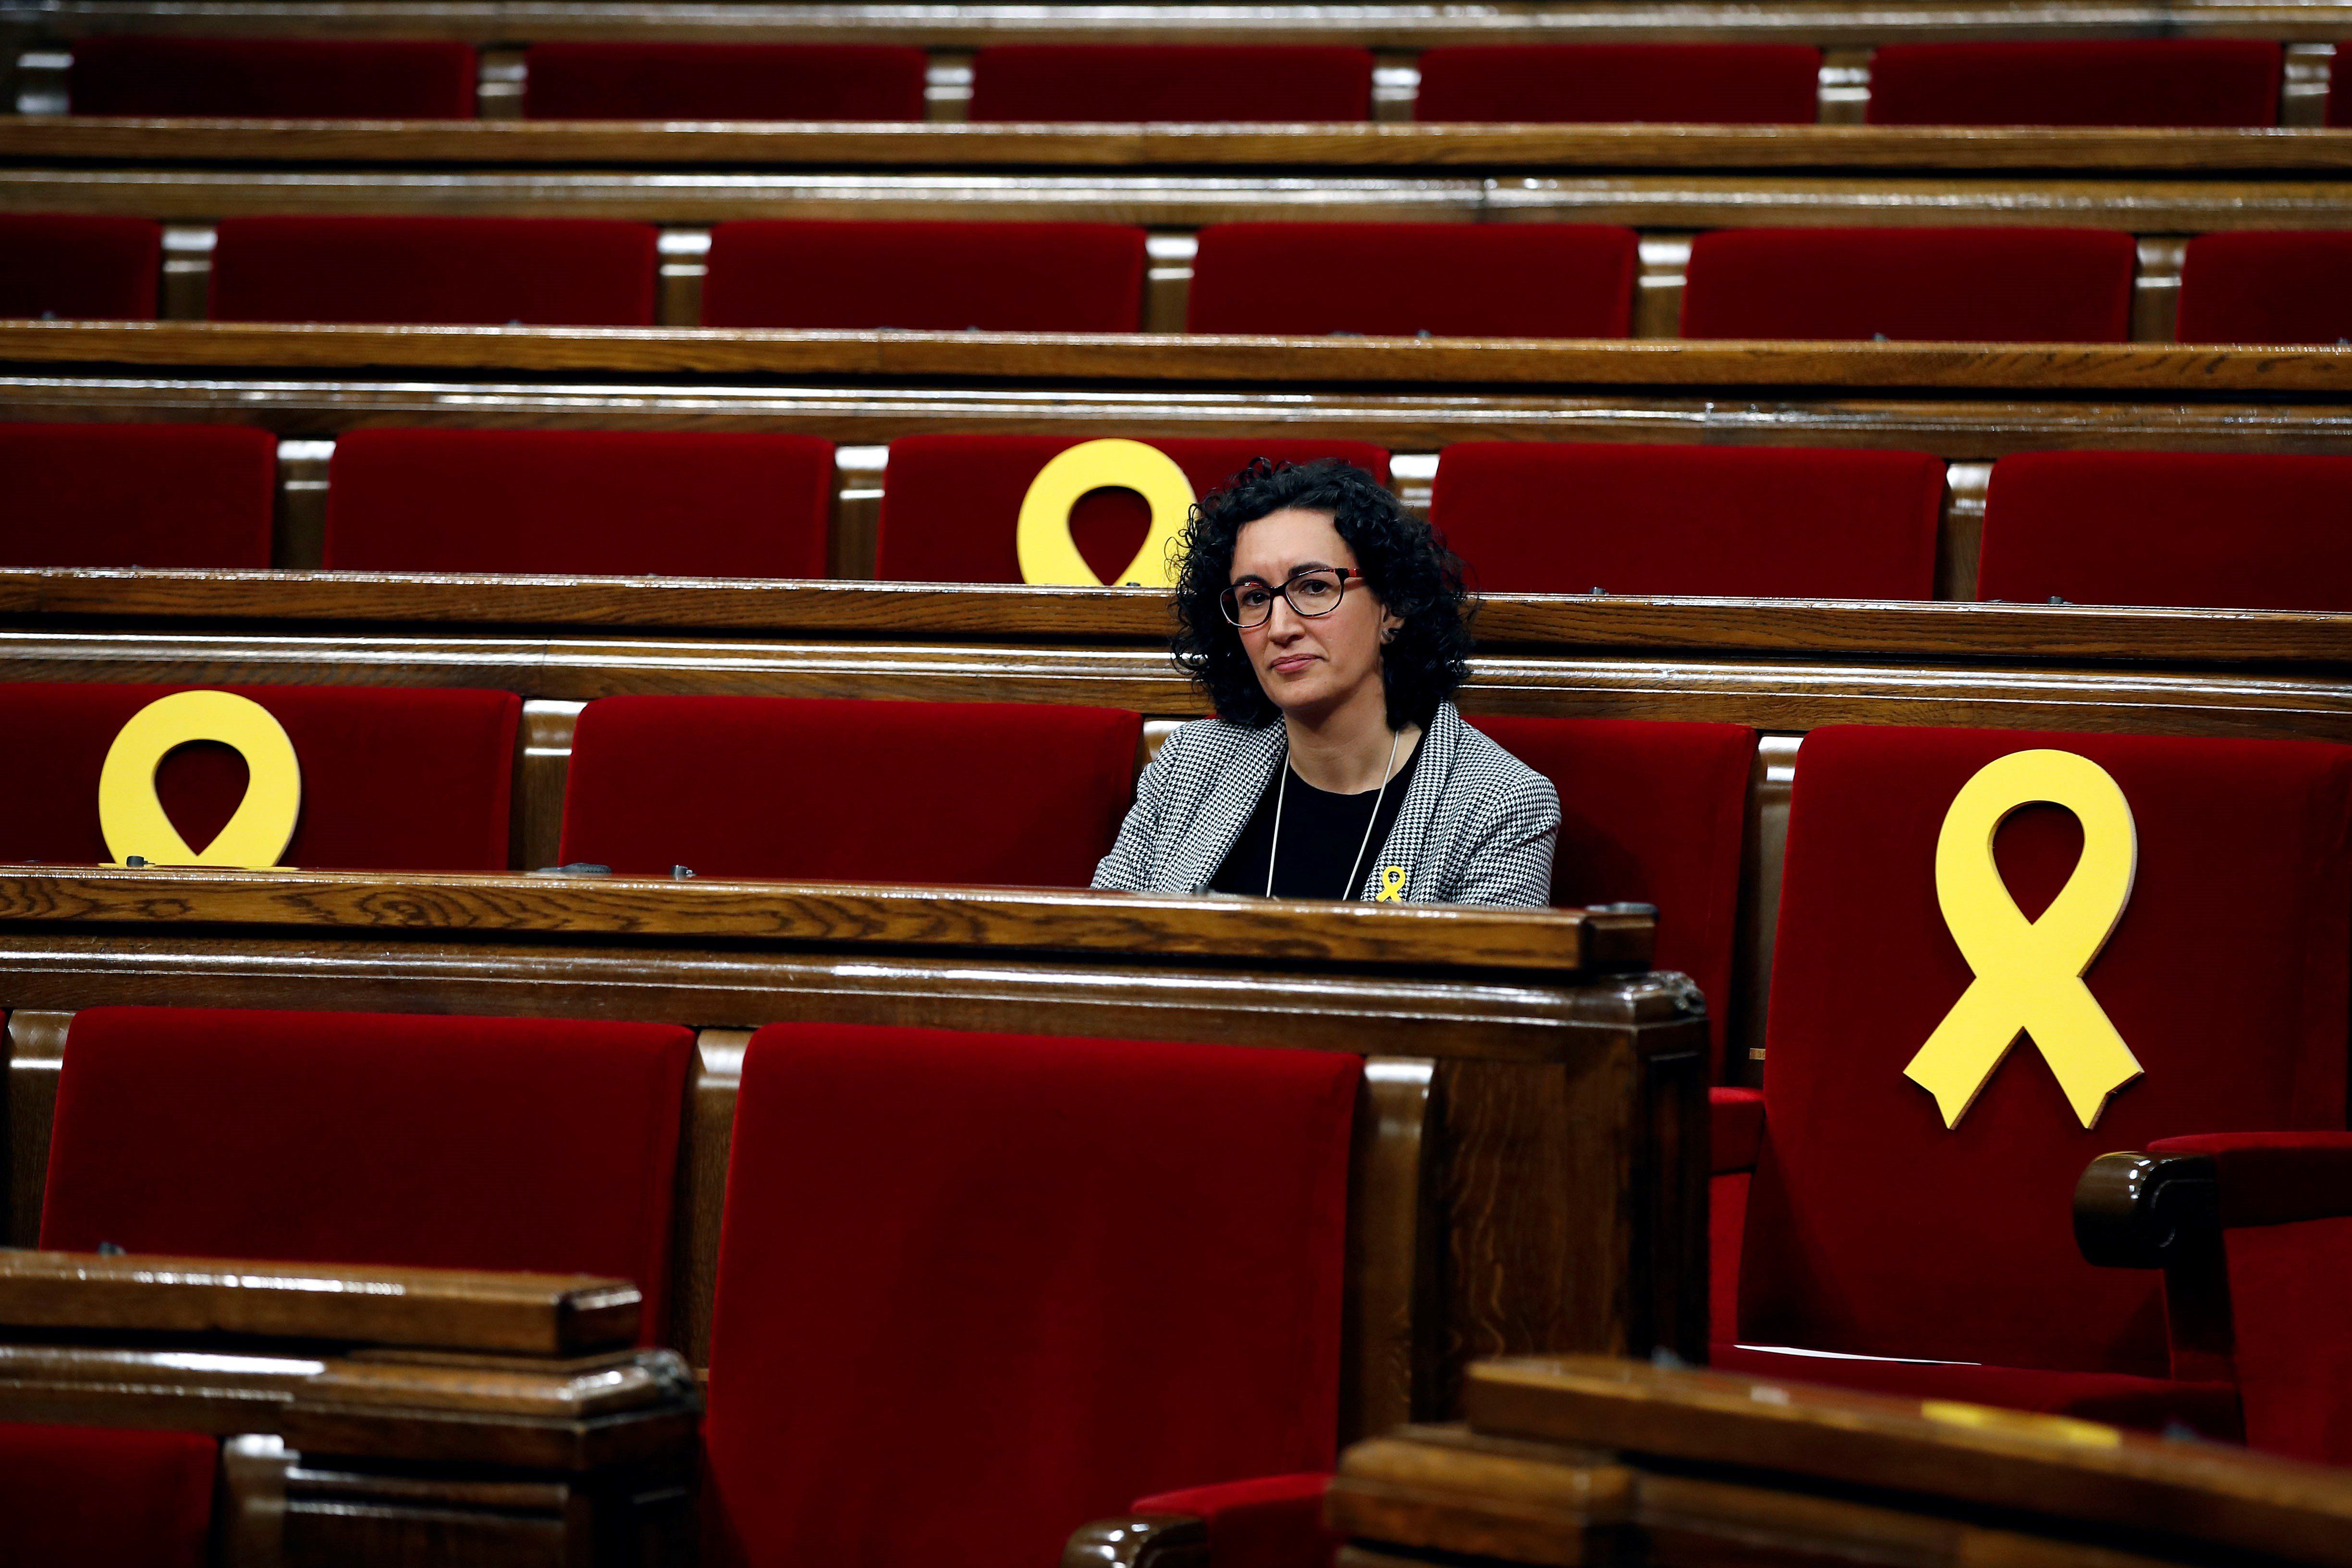 Marta Rovira Kataluniako Parlamentuan, 2018ko urtarrilean. ALBERTO ESTEVEZ / EFE